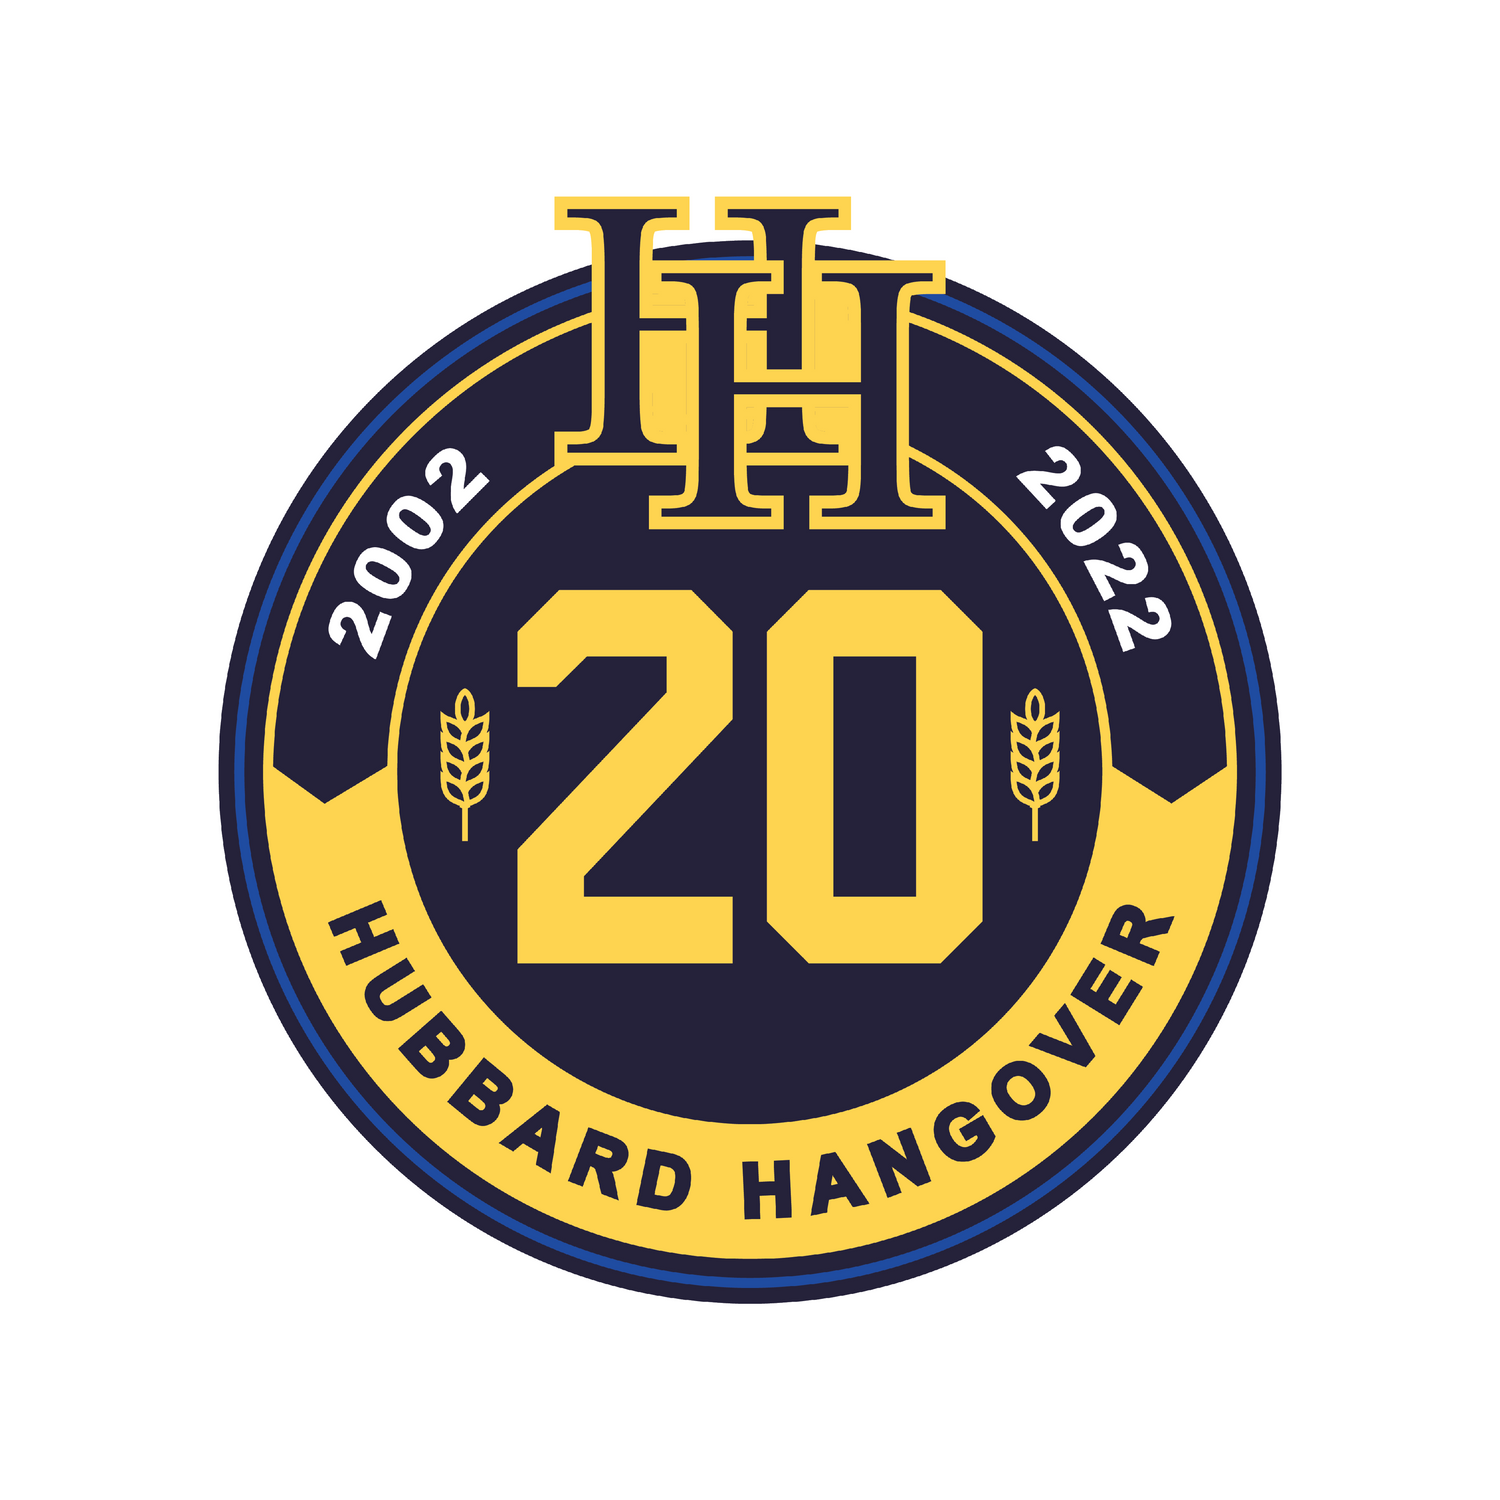 Hubbard Hangover Softball